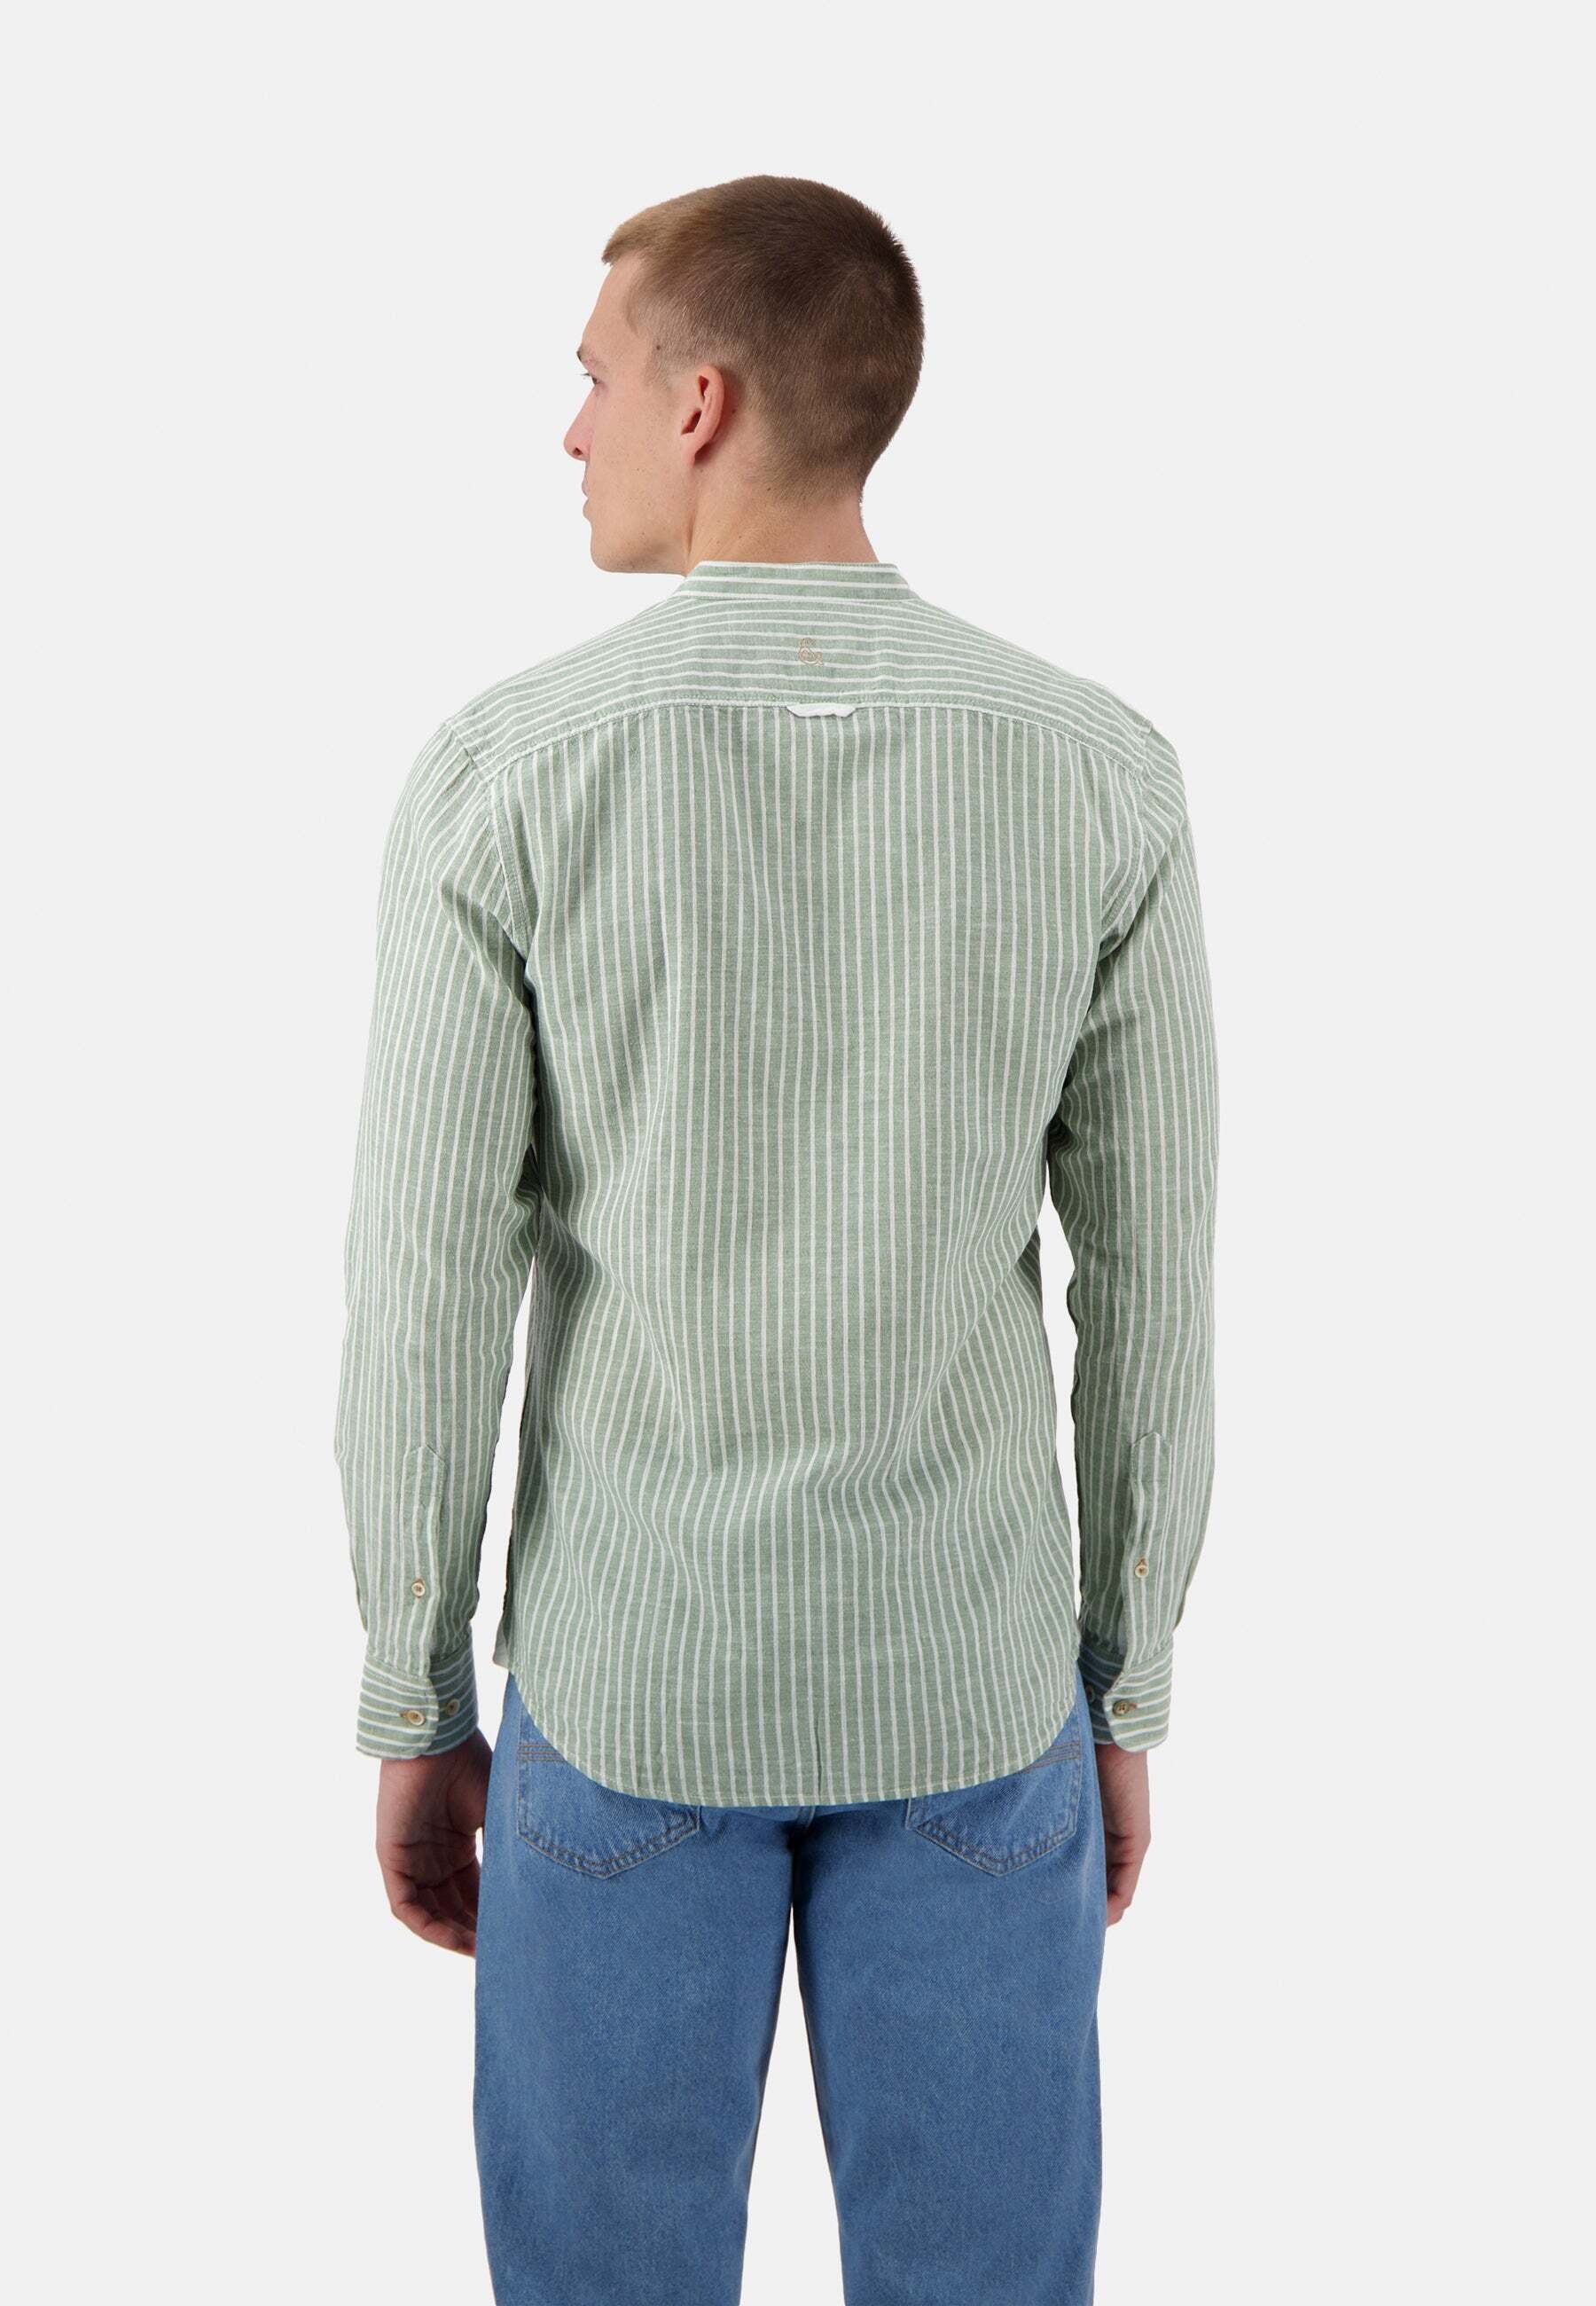 Langarmhemd »Colours&Sons Hemden Linen Blend Stripes«